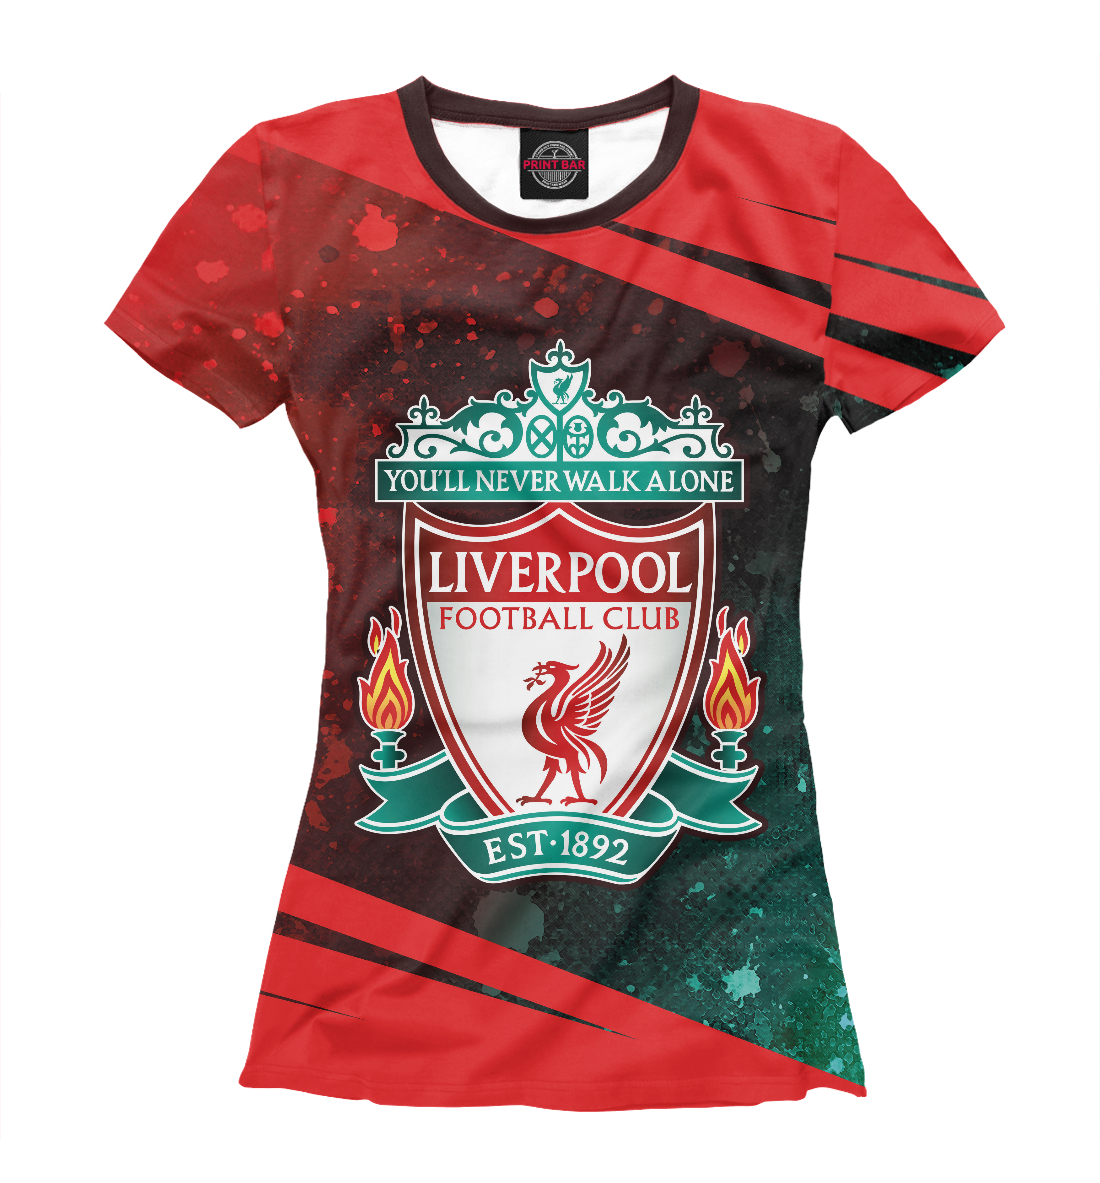 Детская Футболка Liverpool / Ливерпуль для девочек, артикул LVP-675118-fut-1mp